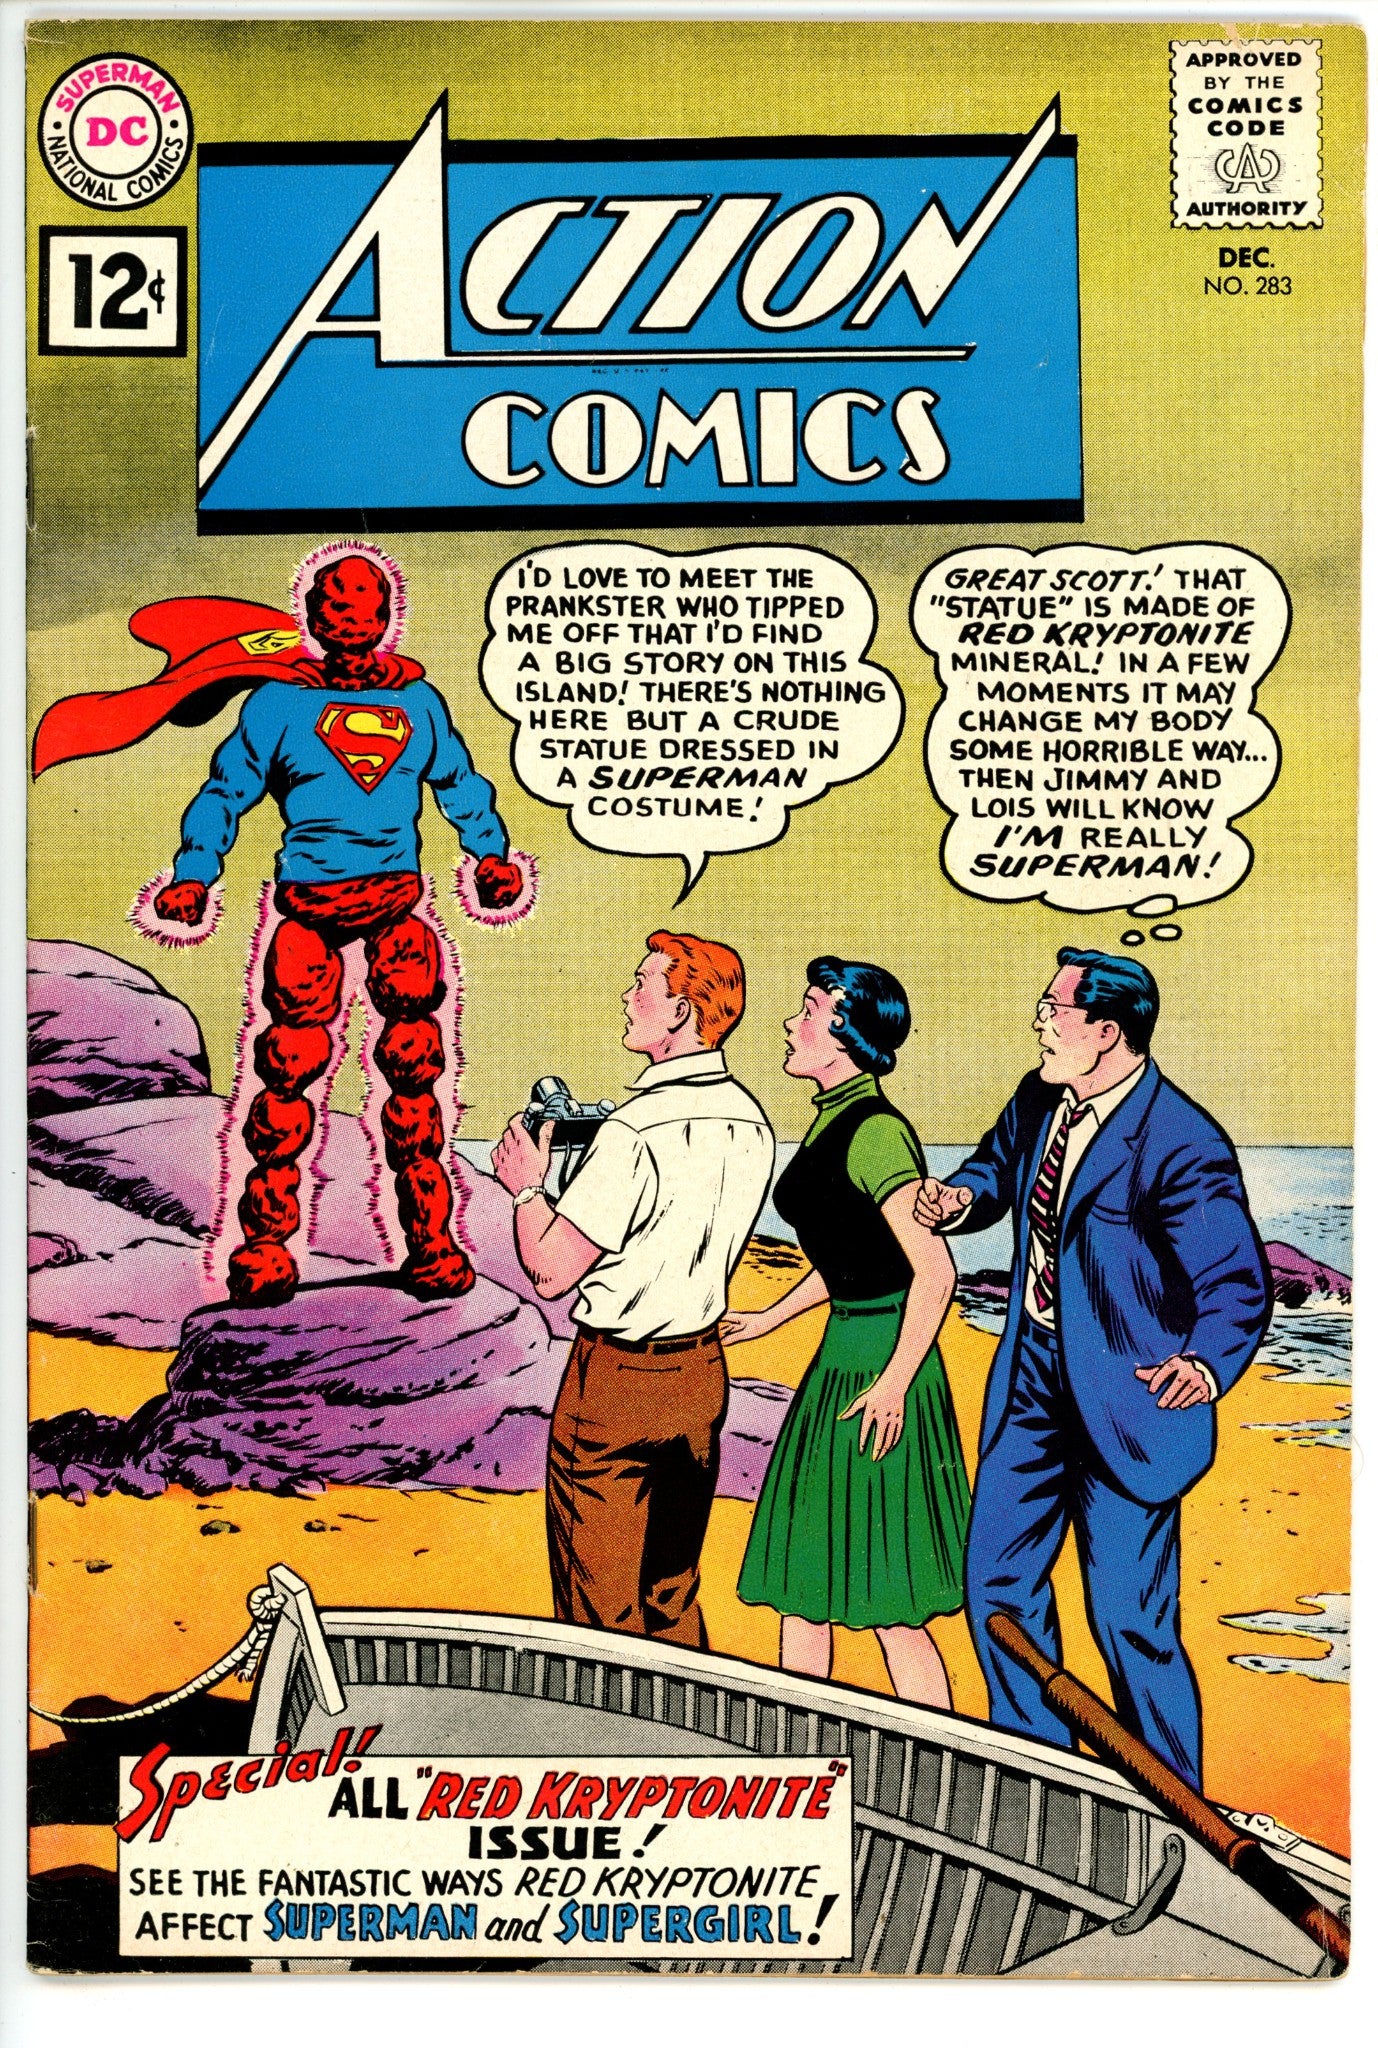 Action Comics Vol 1 283 FN